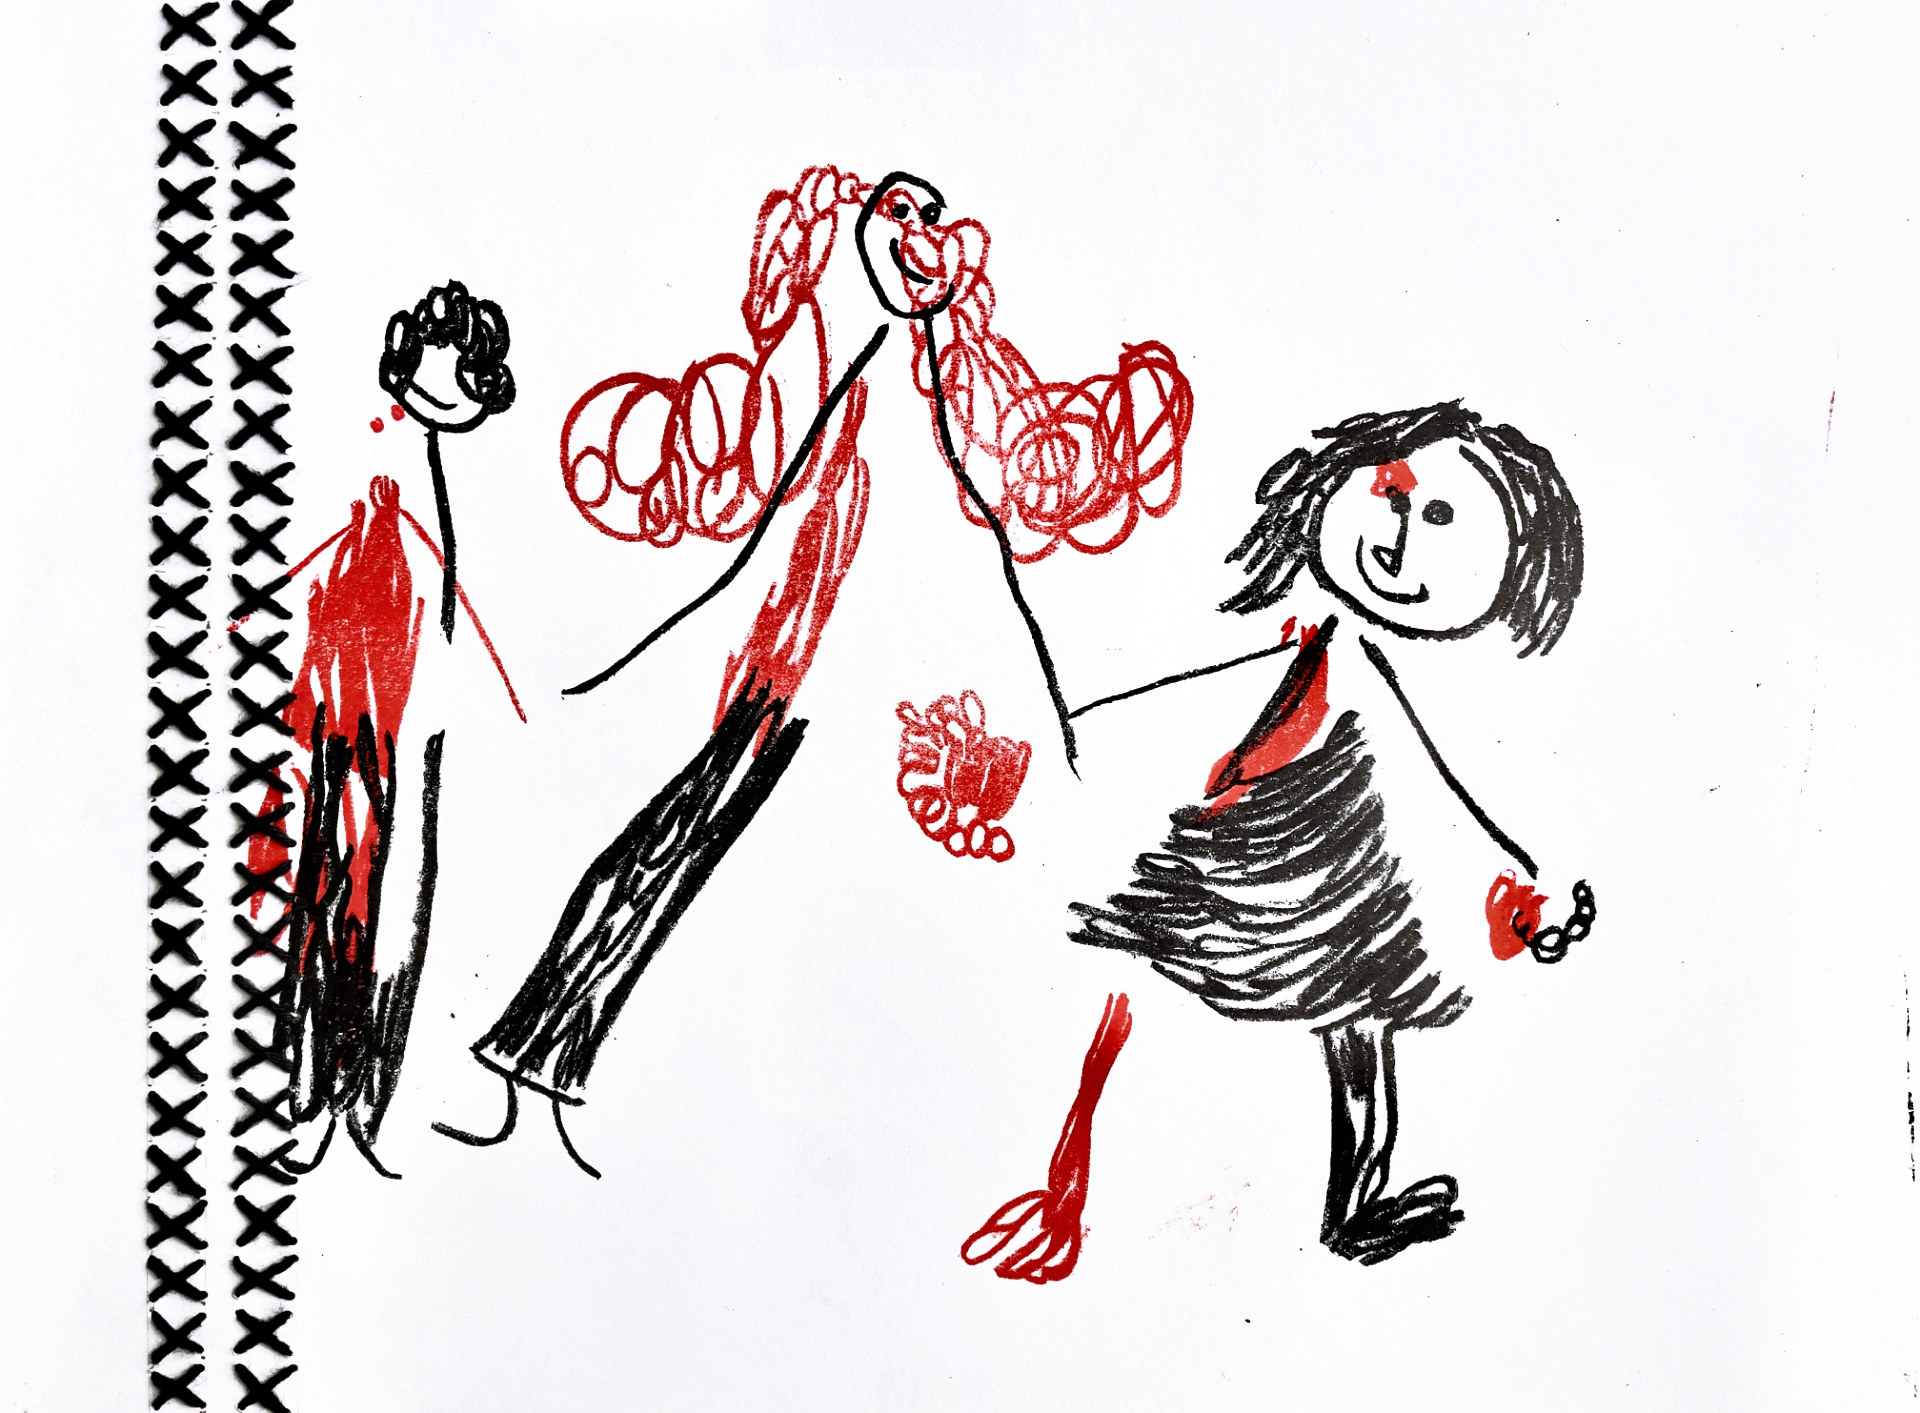 Praca przedstawia dziecięcy rysunek czarną i czerwoną kredką przedstawiający trzyosobową rodzinę. Z lewej strony pracy znajduje się pas pionowego haftu.